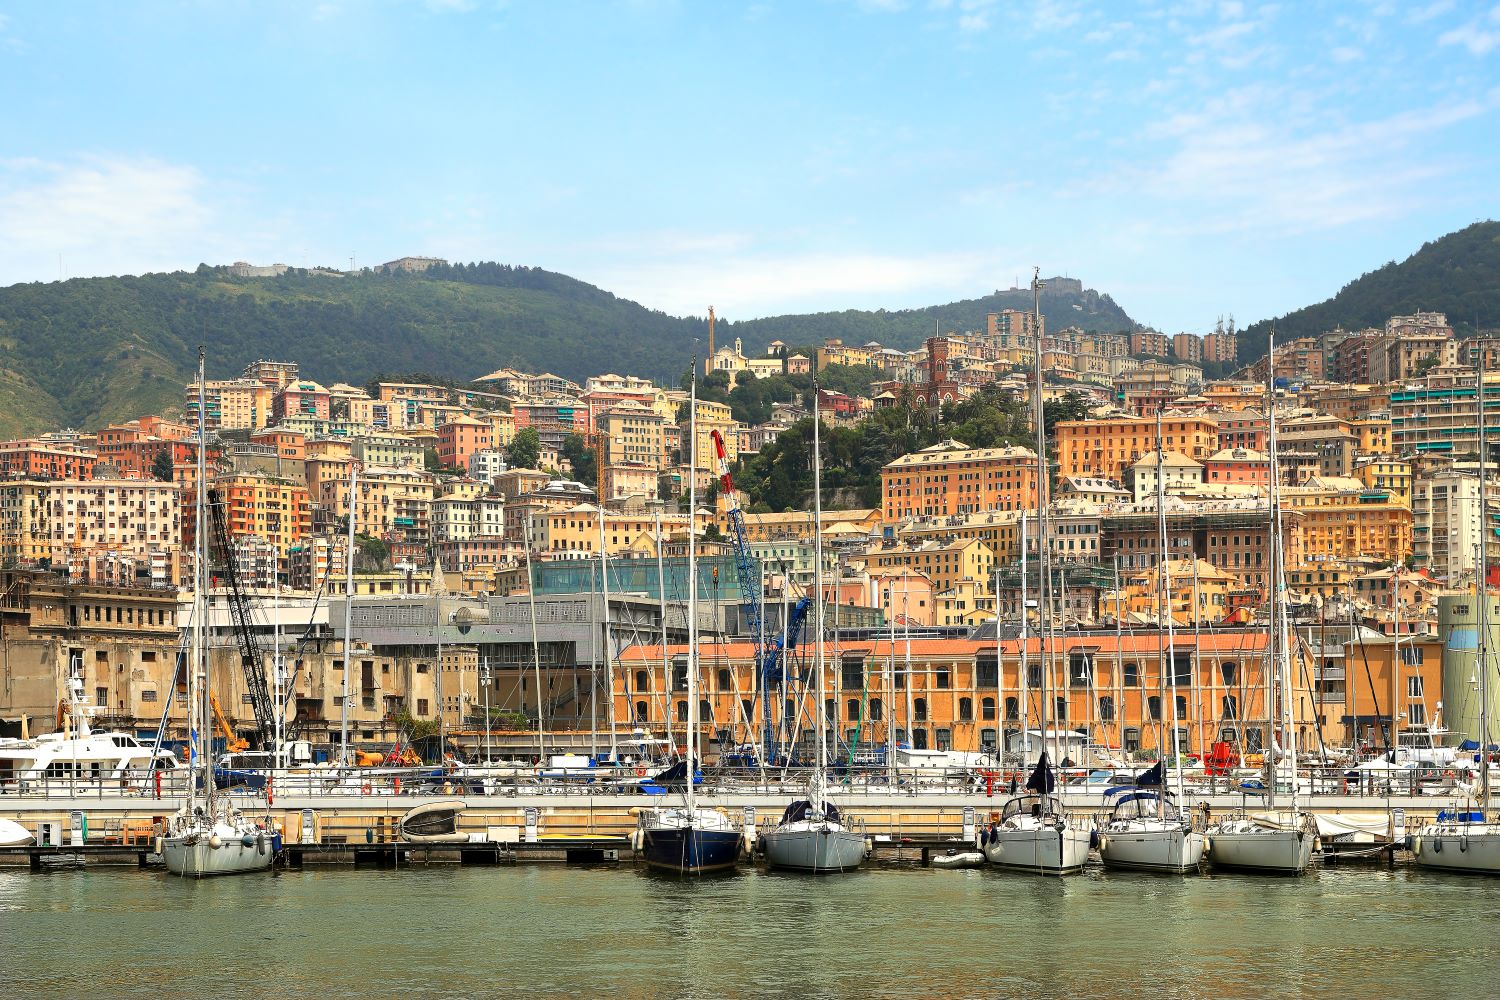 Nuove aree per la sosta taxi al Porto di Genova